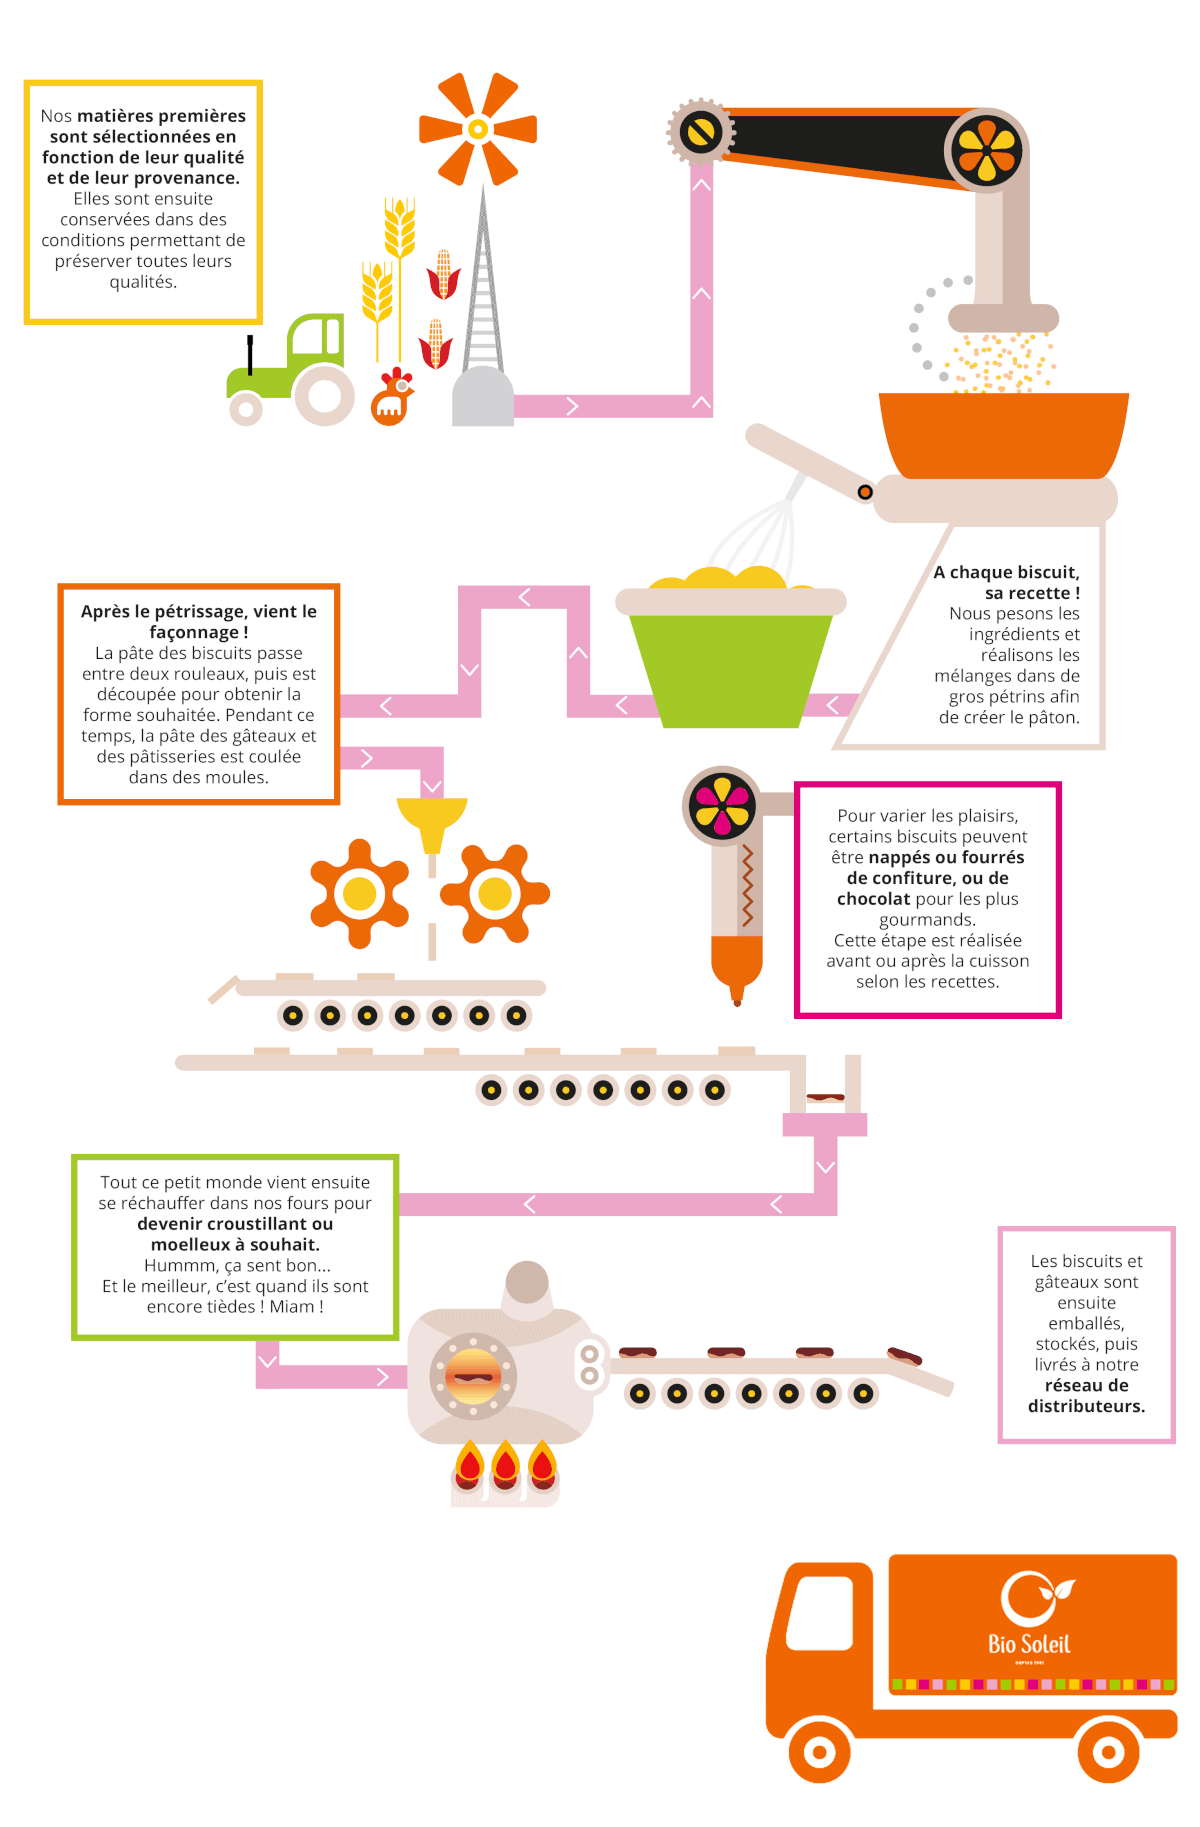 Illustration animée représentant les étapes de fabrications de nos biscuits